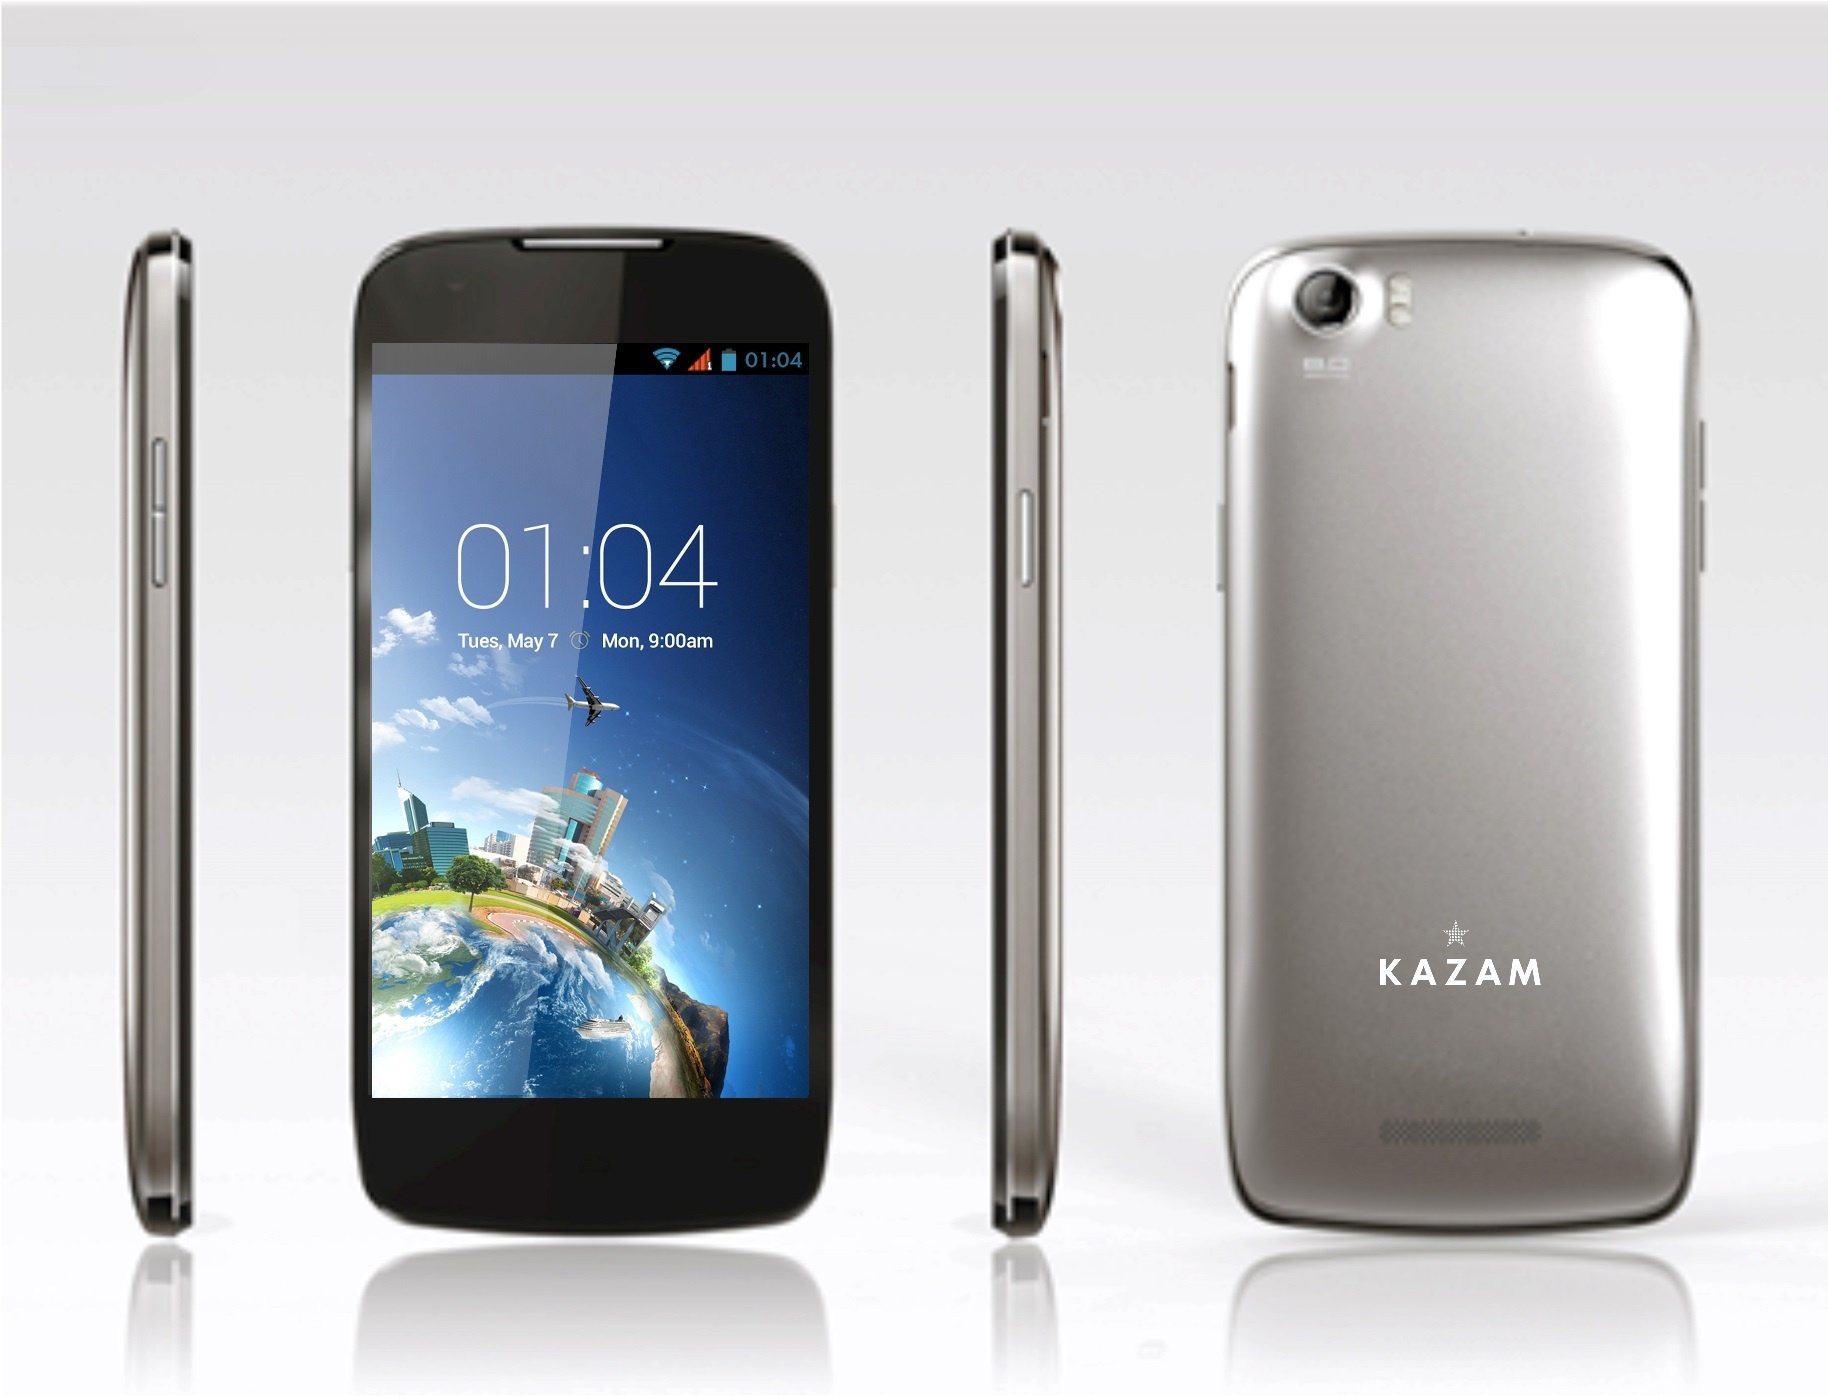 El fabricante de móviles Kazam lanza sus primeros smartphones en España desde 100 euros